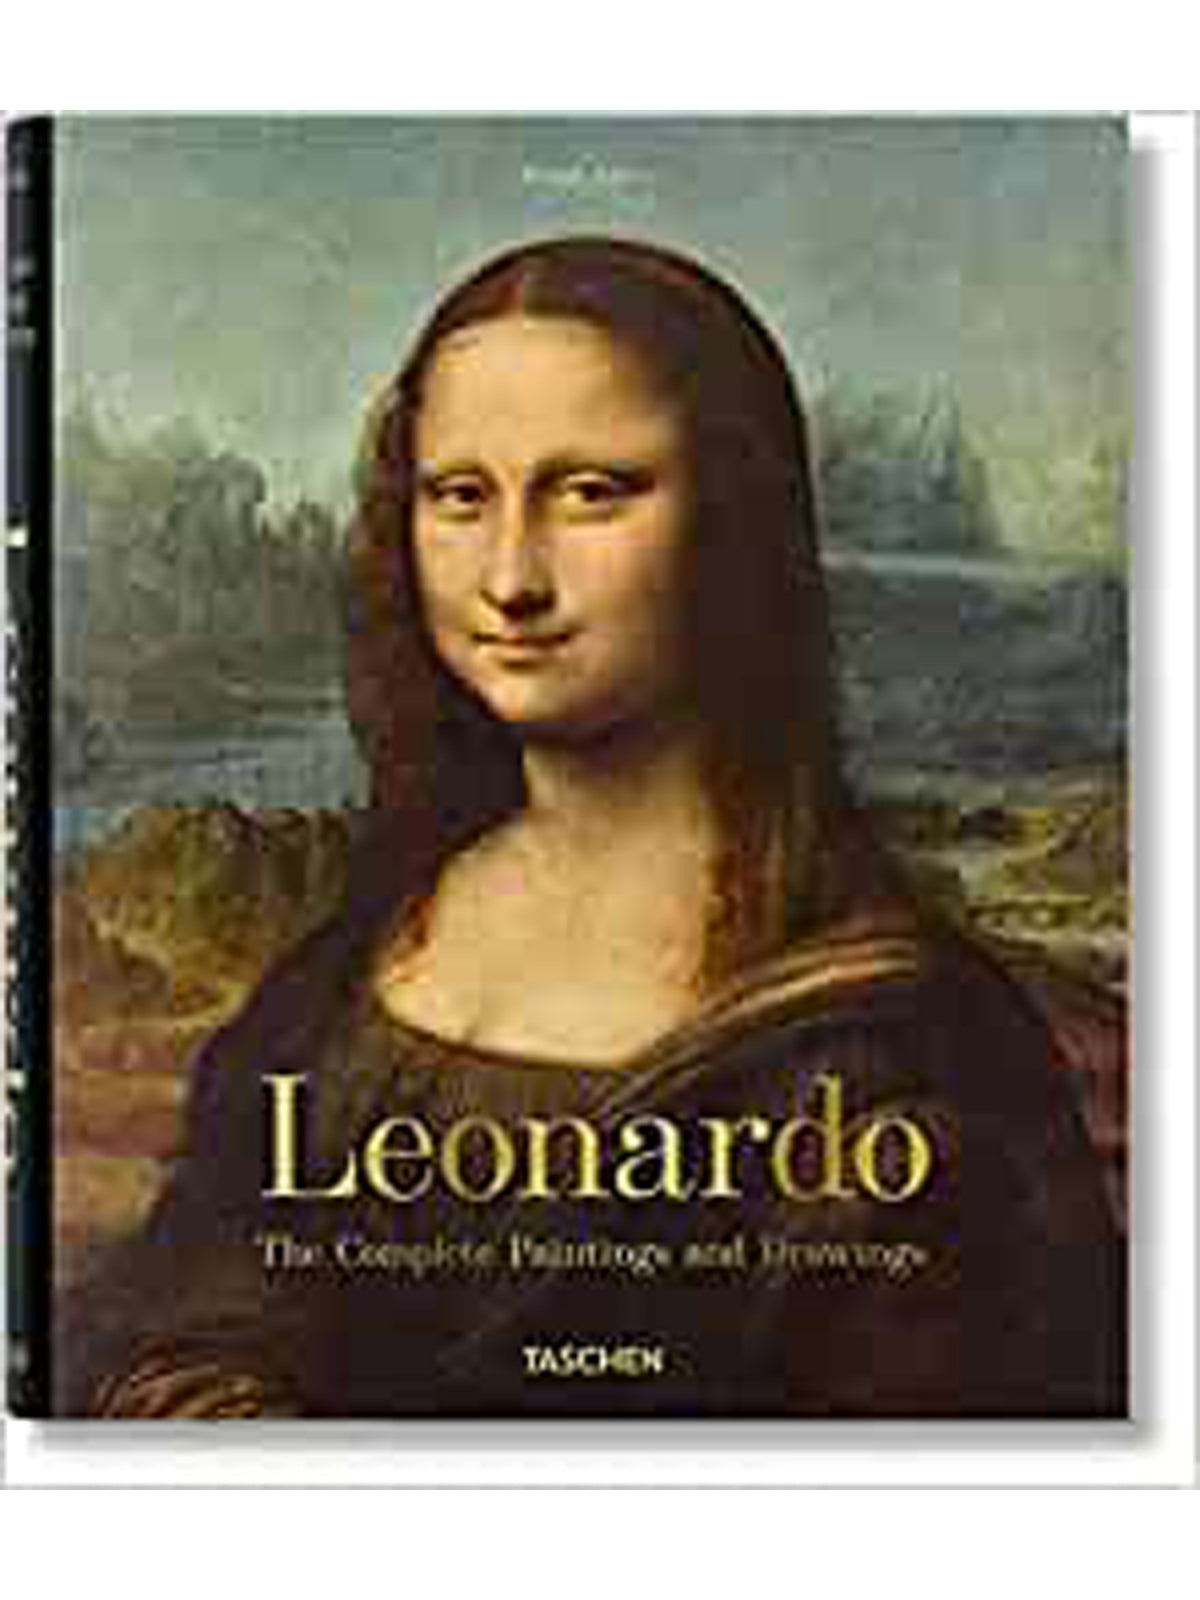 לאונרדו ציורים שלמים